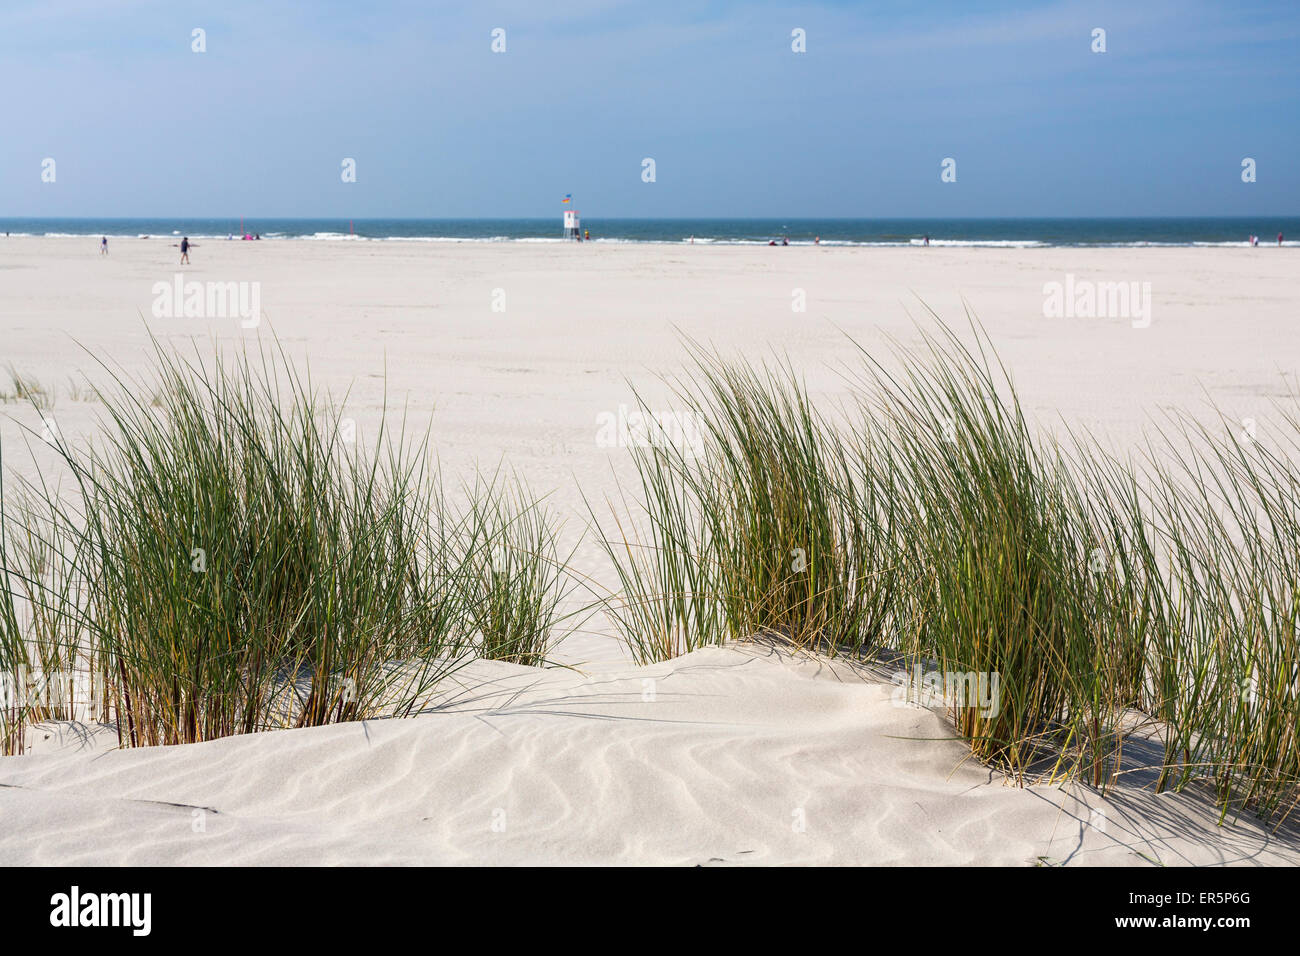 Dünen am Strand, Insel Juist, Nordsee, Ostfriesischen Inseln, Ostfriesland, Niedersachsen, Deutschland, Europa Stockfoto